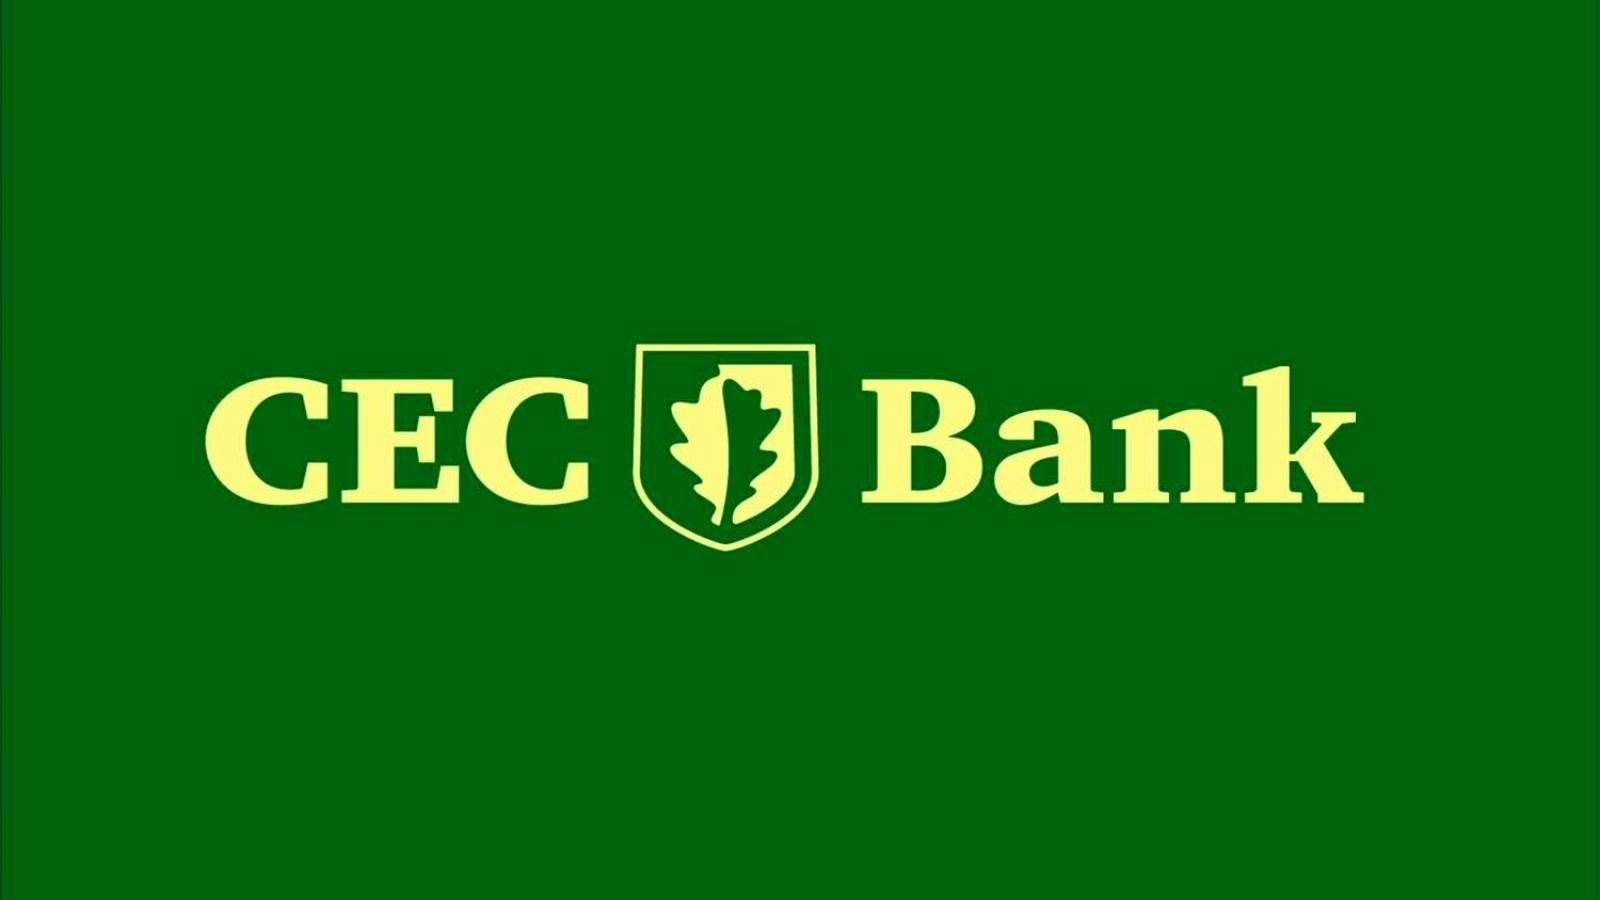 Maatregel voor sluiting van CEC-banken